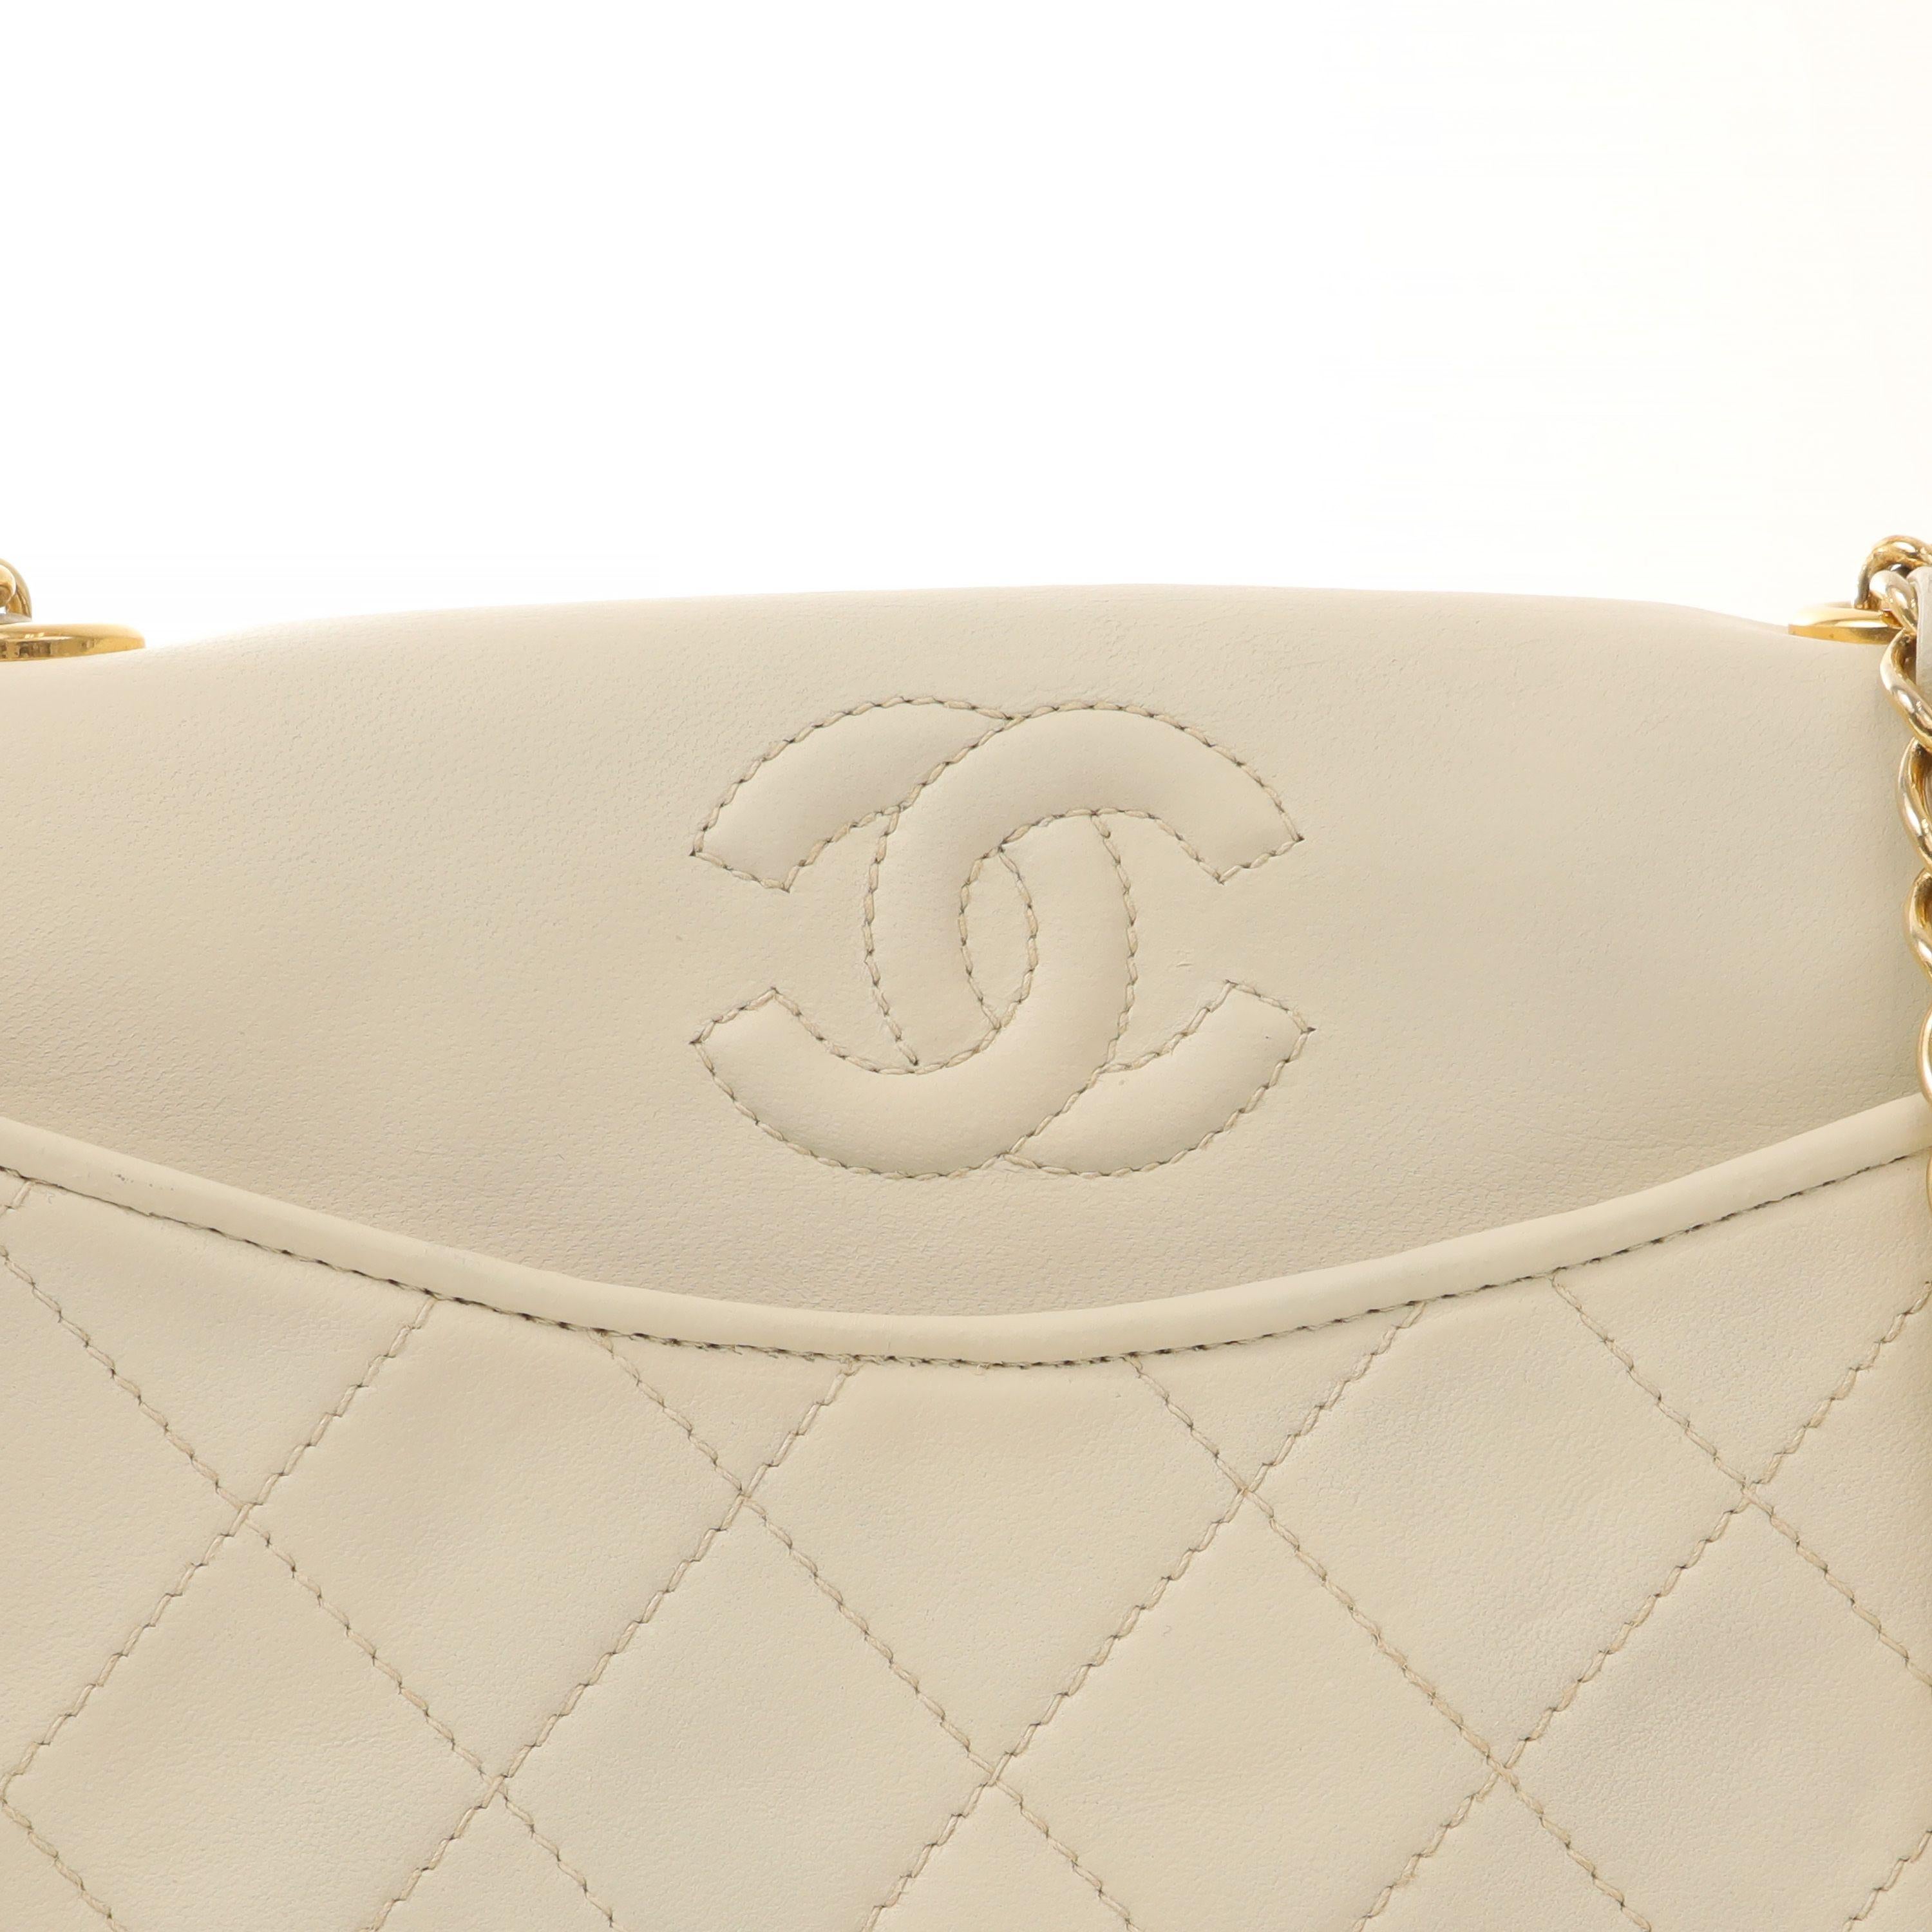 Diese authentische Chanel Elfenbein Lammfell Crossbody Bag ist in schönem Vintage-Zustand.  Kleine Tasche aus weichem elfenbeinfarbenem Lammfell mit gesteppter Vorderseite.  Goldfarbenes Leder und ein mit einer Kette verflochtenes Band.  Inklusive